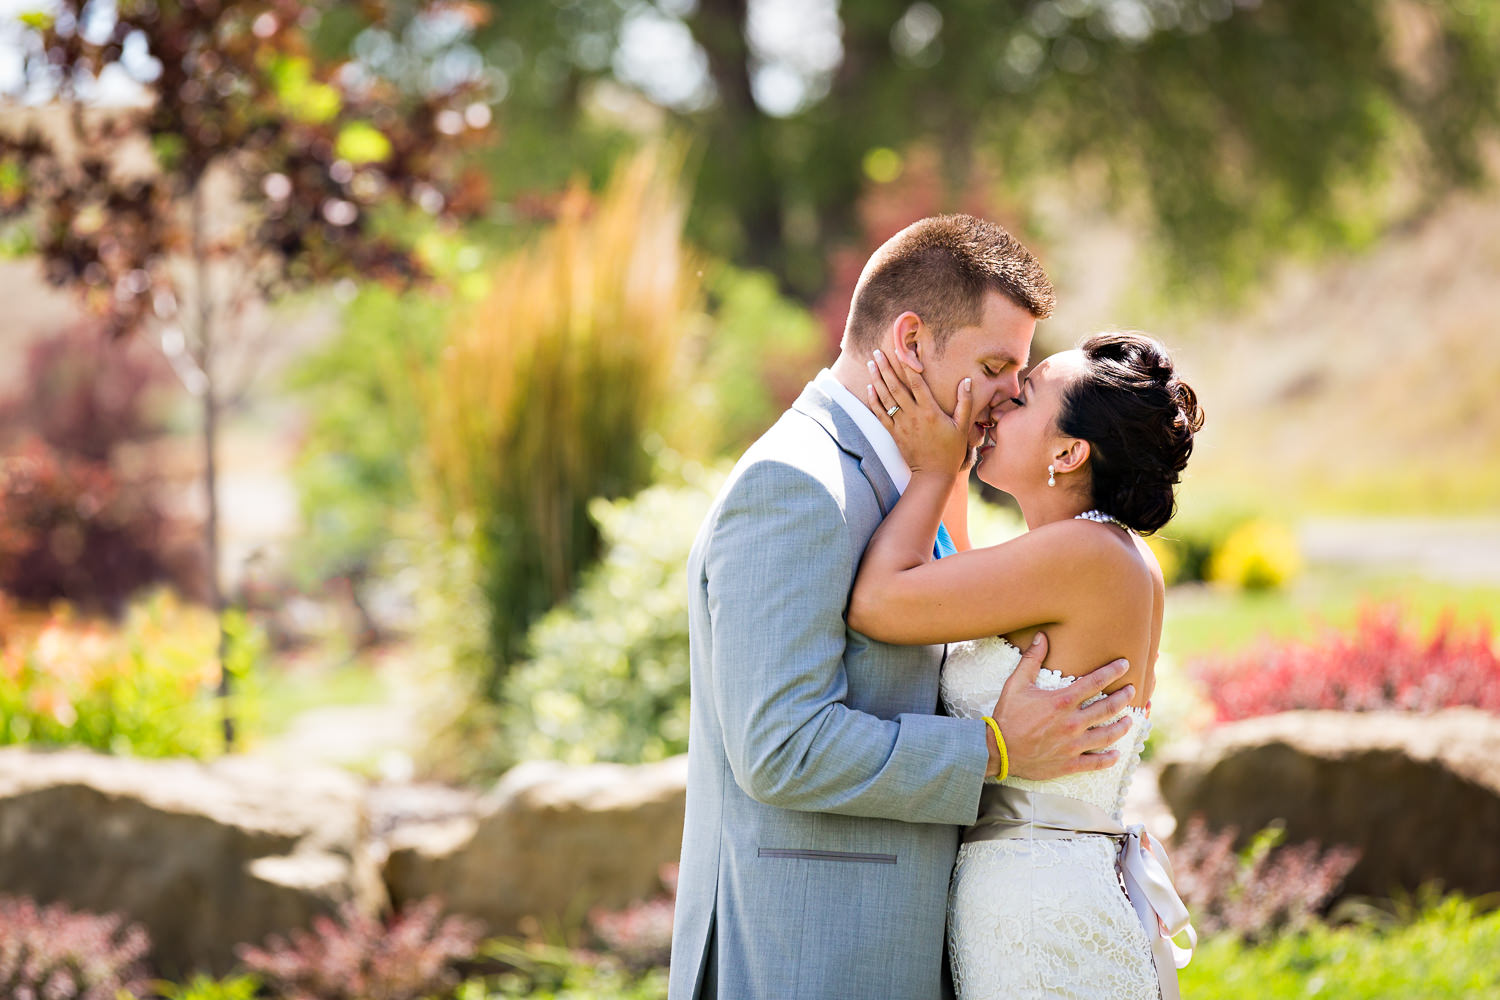 billings-montana-chanceys-wedding-first-look-bride-groom-kiss.jpg